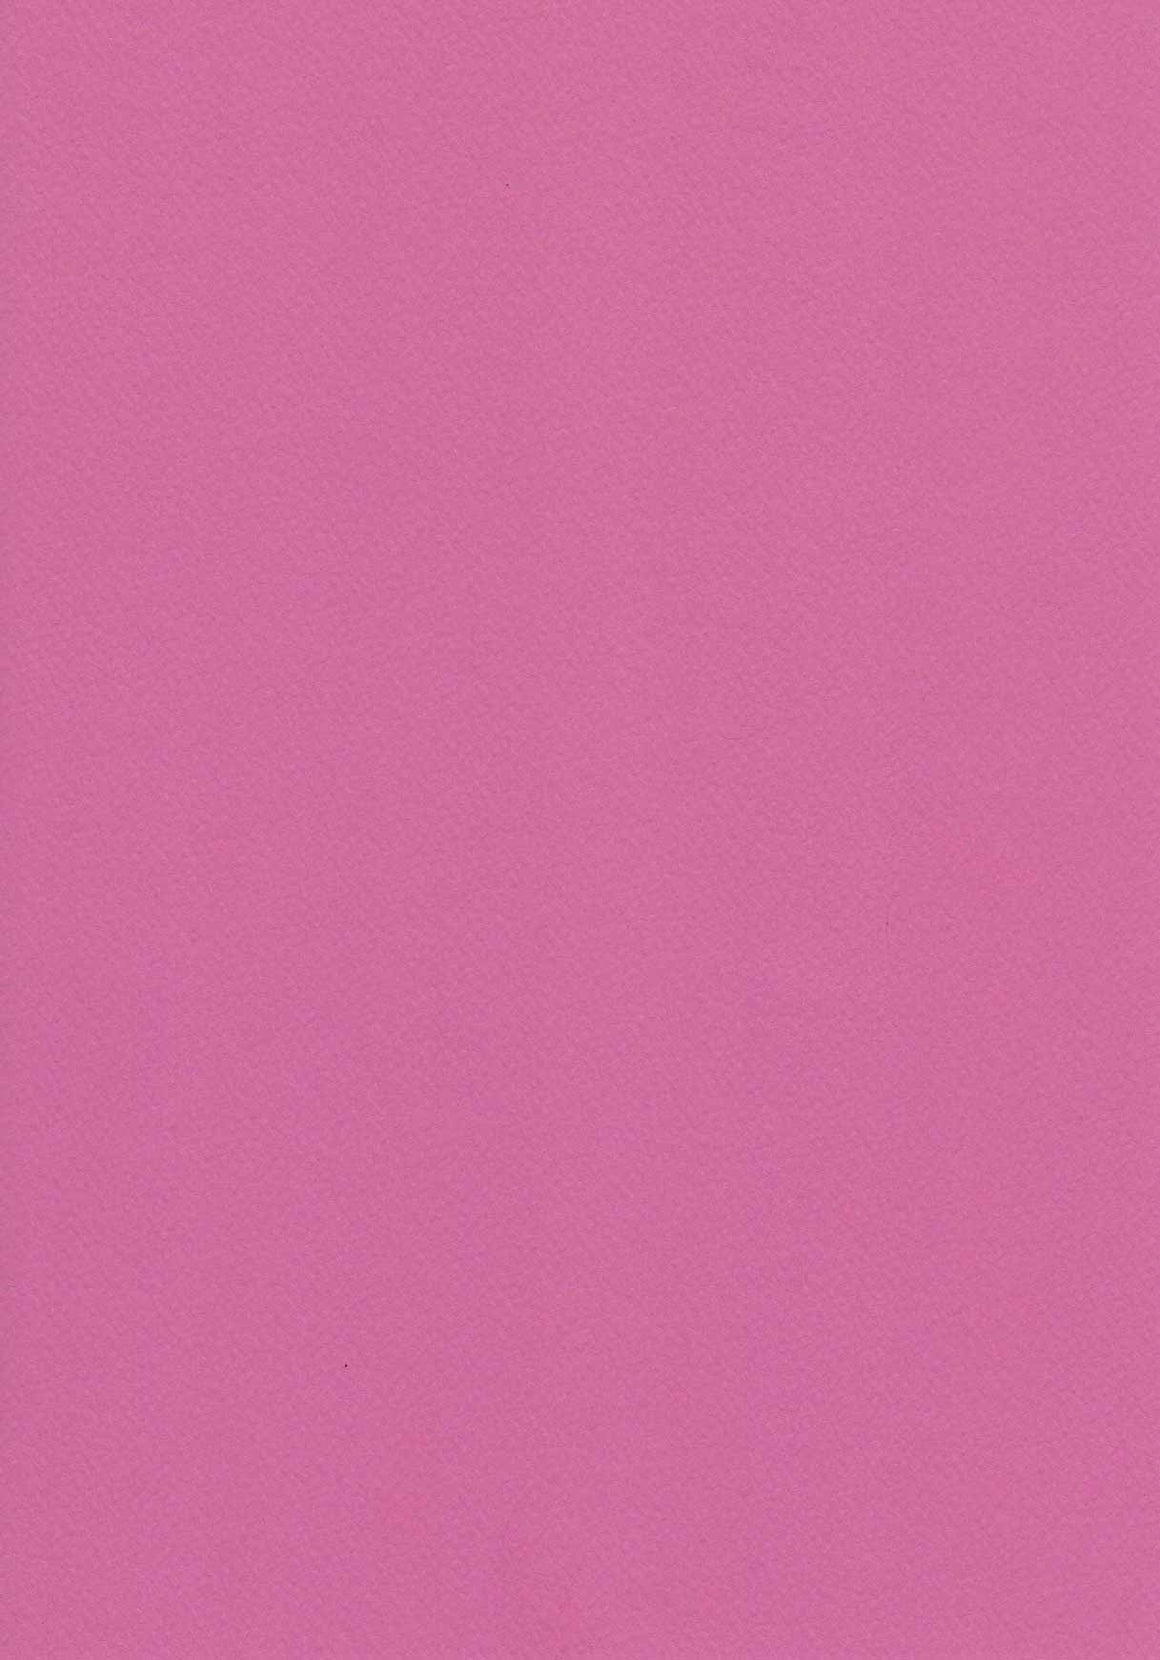 Pink Textured A4 Card